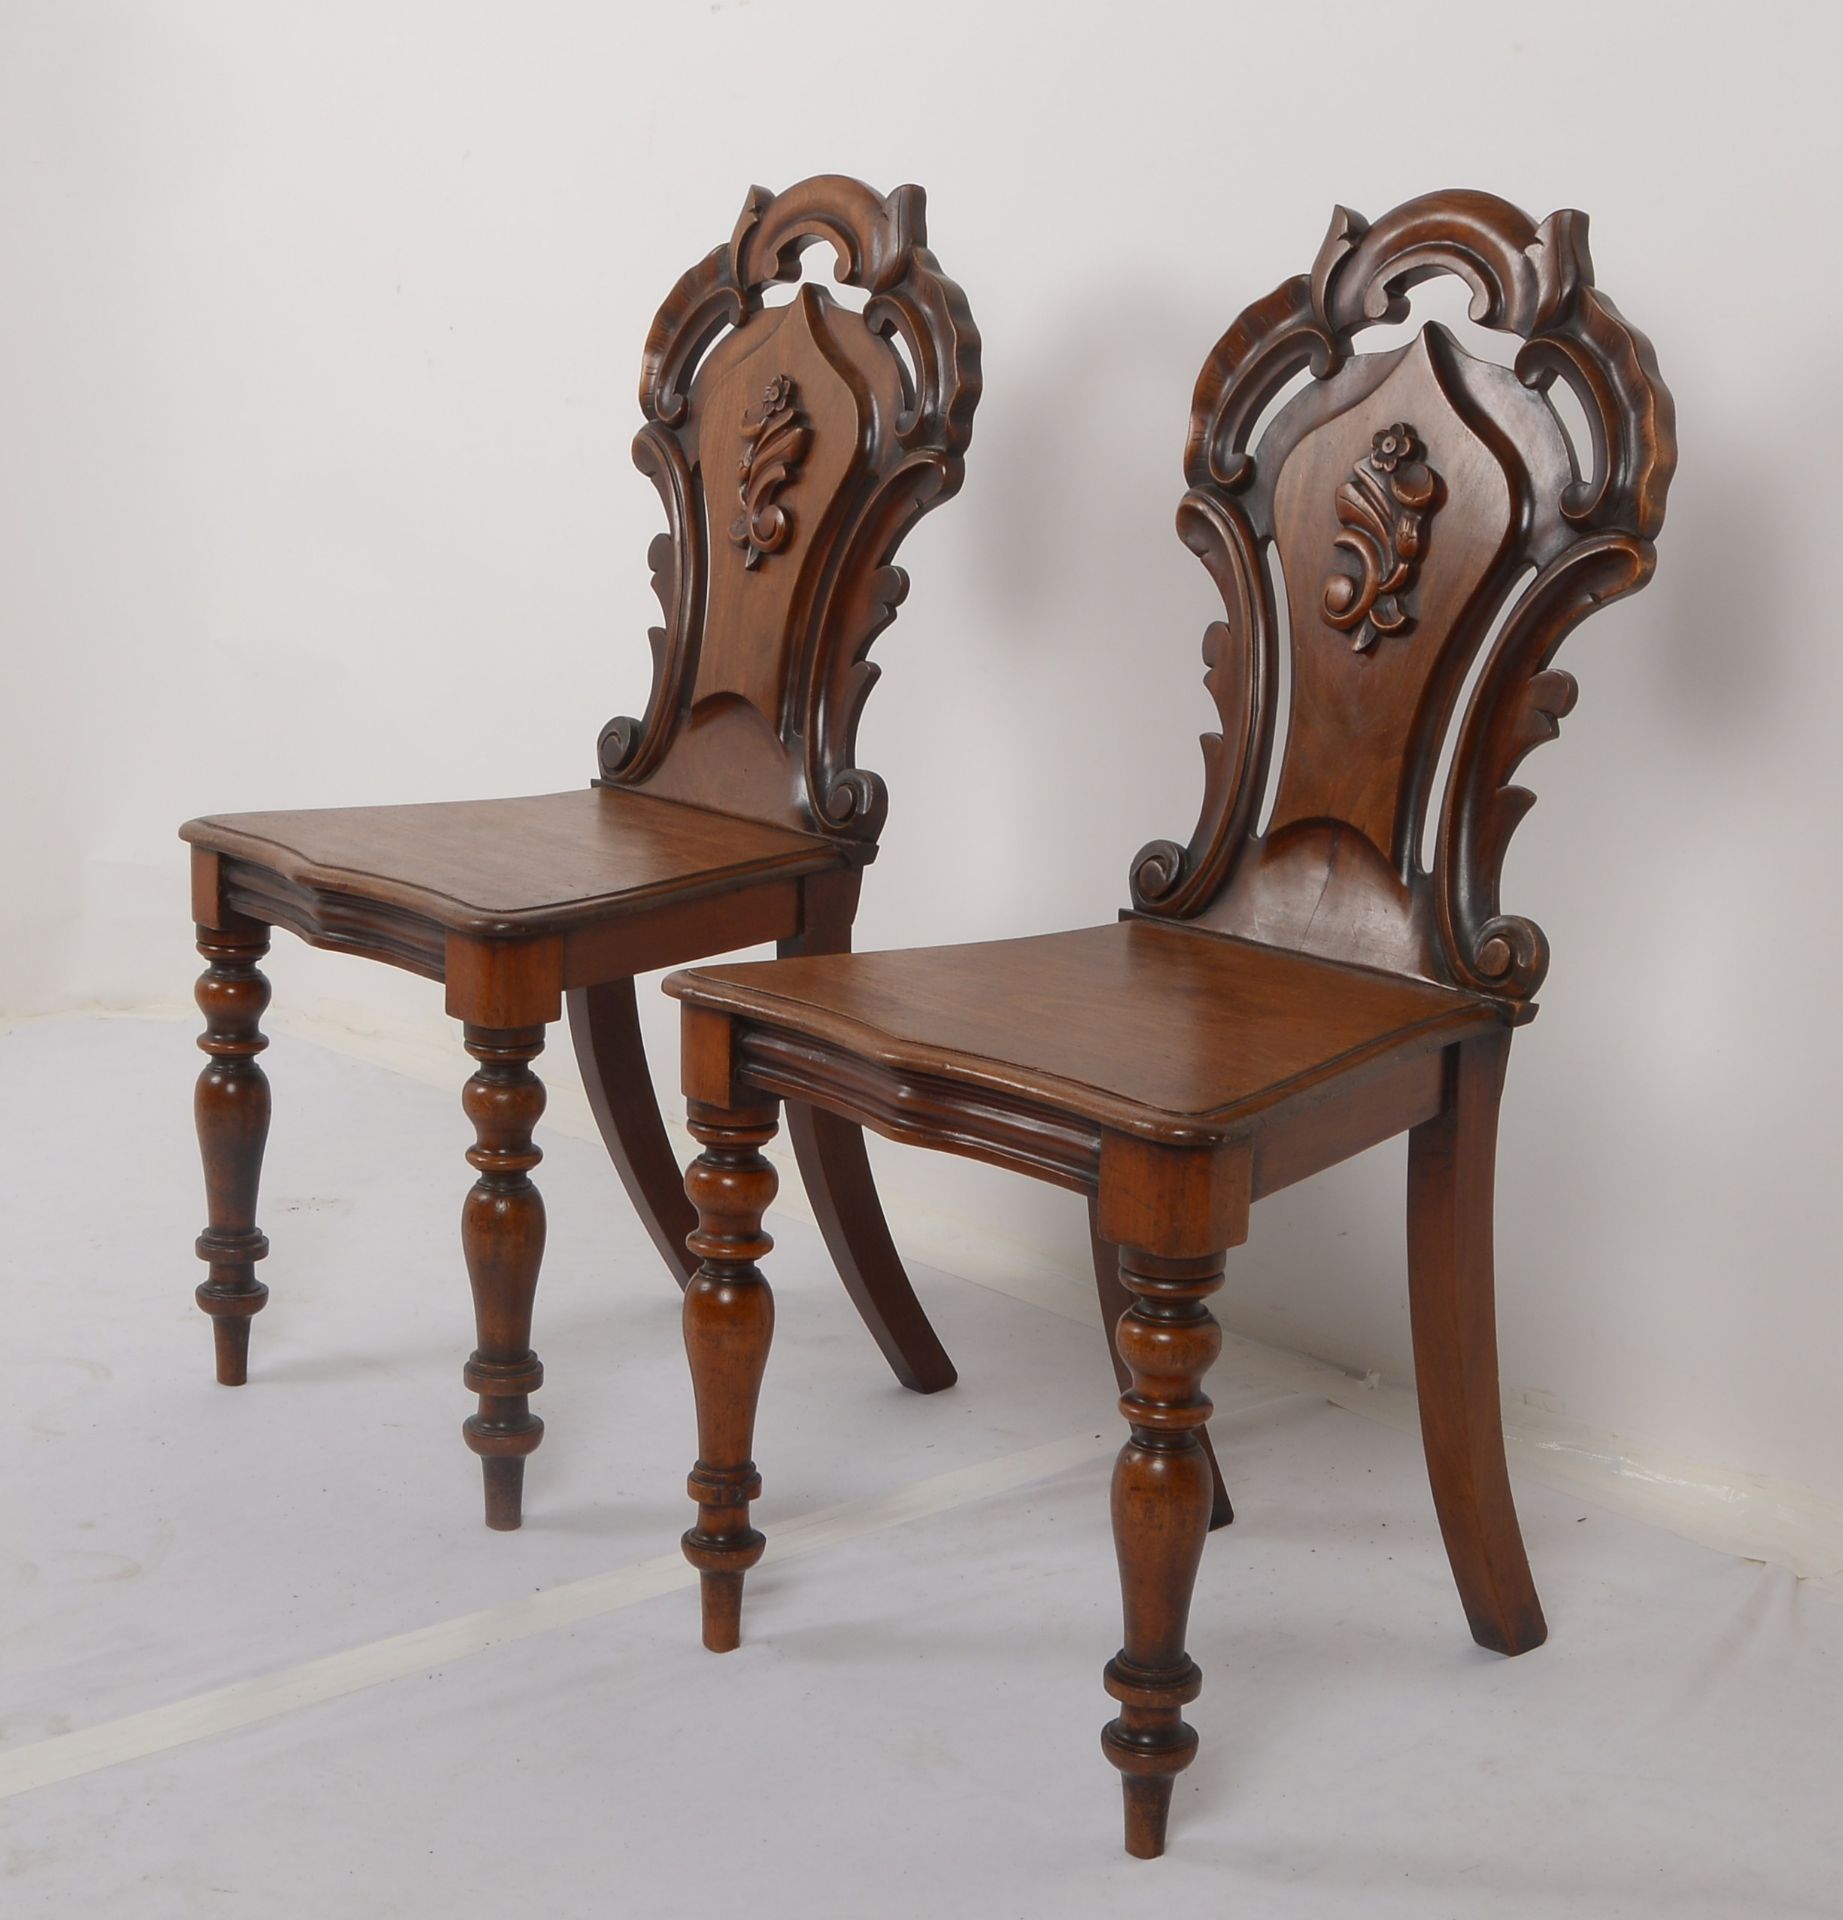 Paar Stuehle (England, viktorianisch/ca. 1880), -Hall Chairs-, Mahagoni, ausladende Rueckenlehne mit - Image 3 of 3